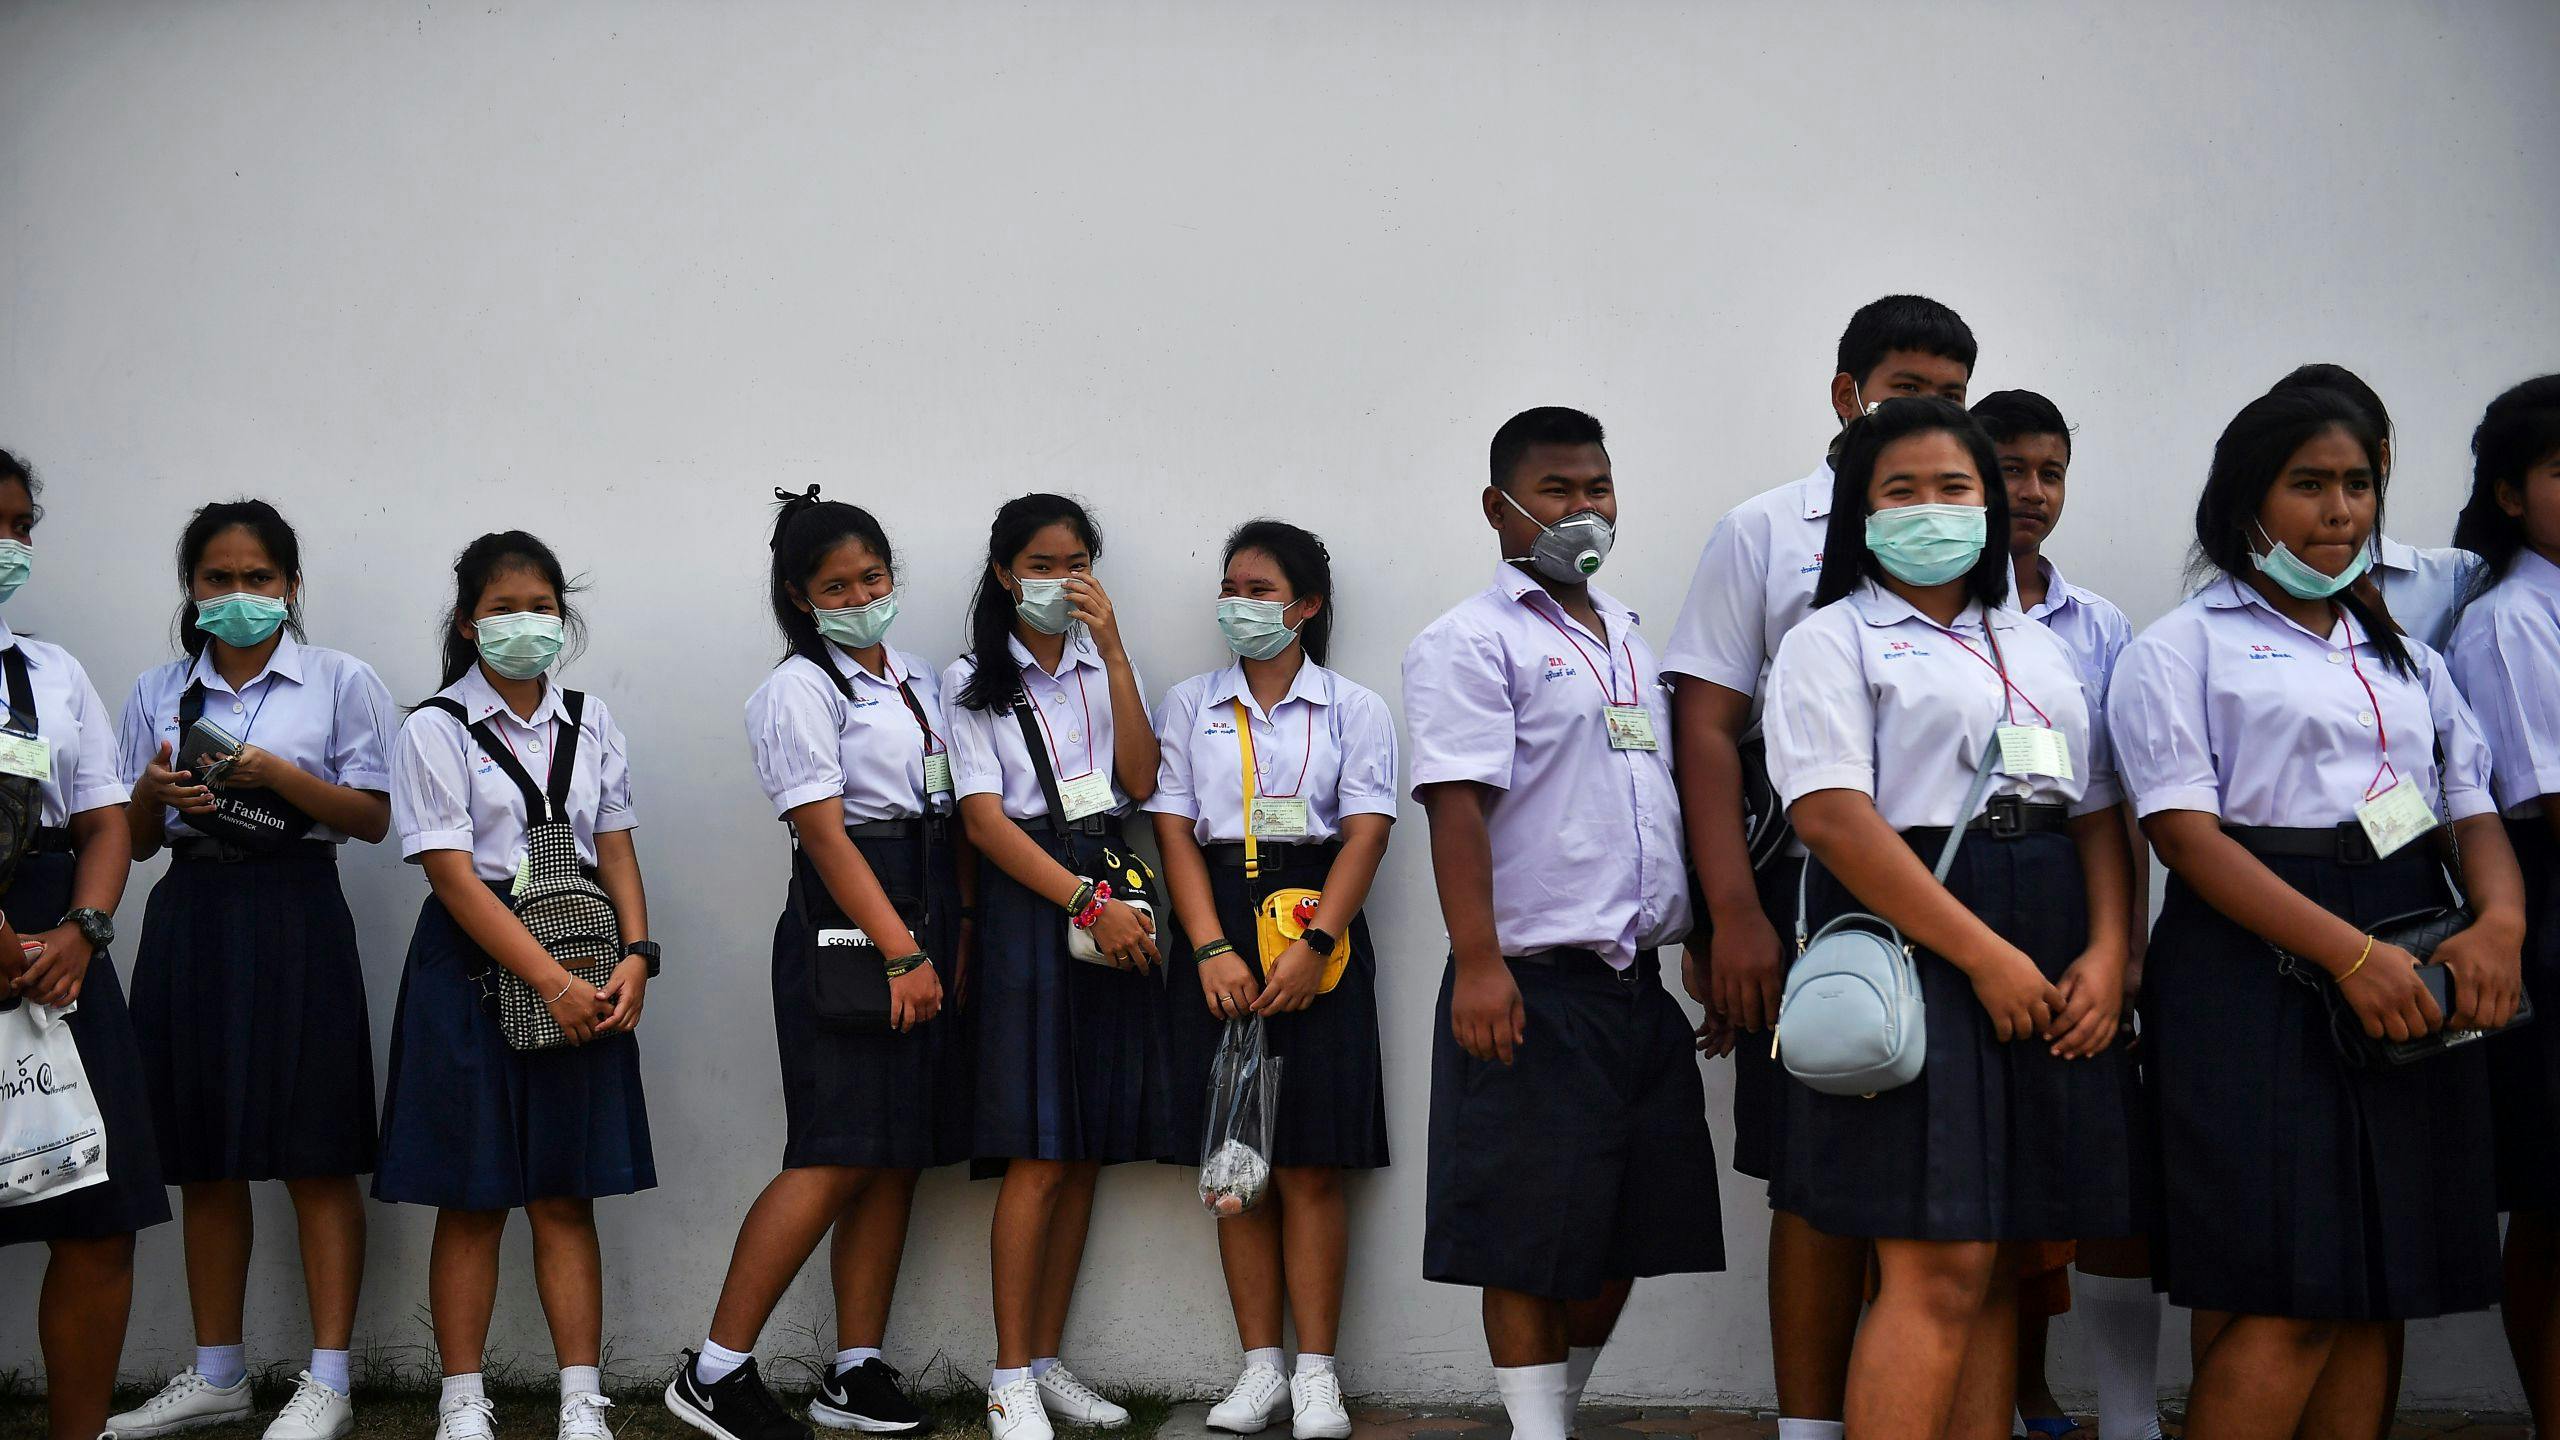 Thaise studenten nemen voorzorgsmaatregelen